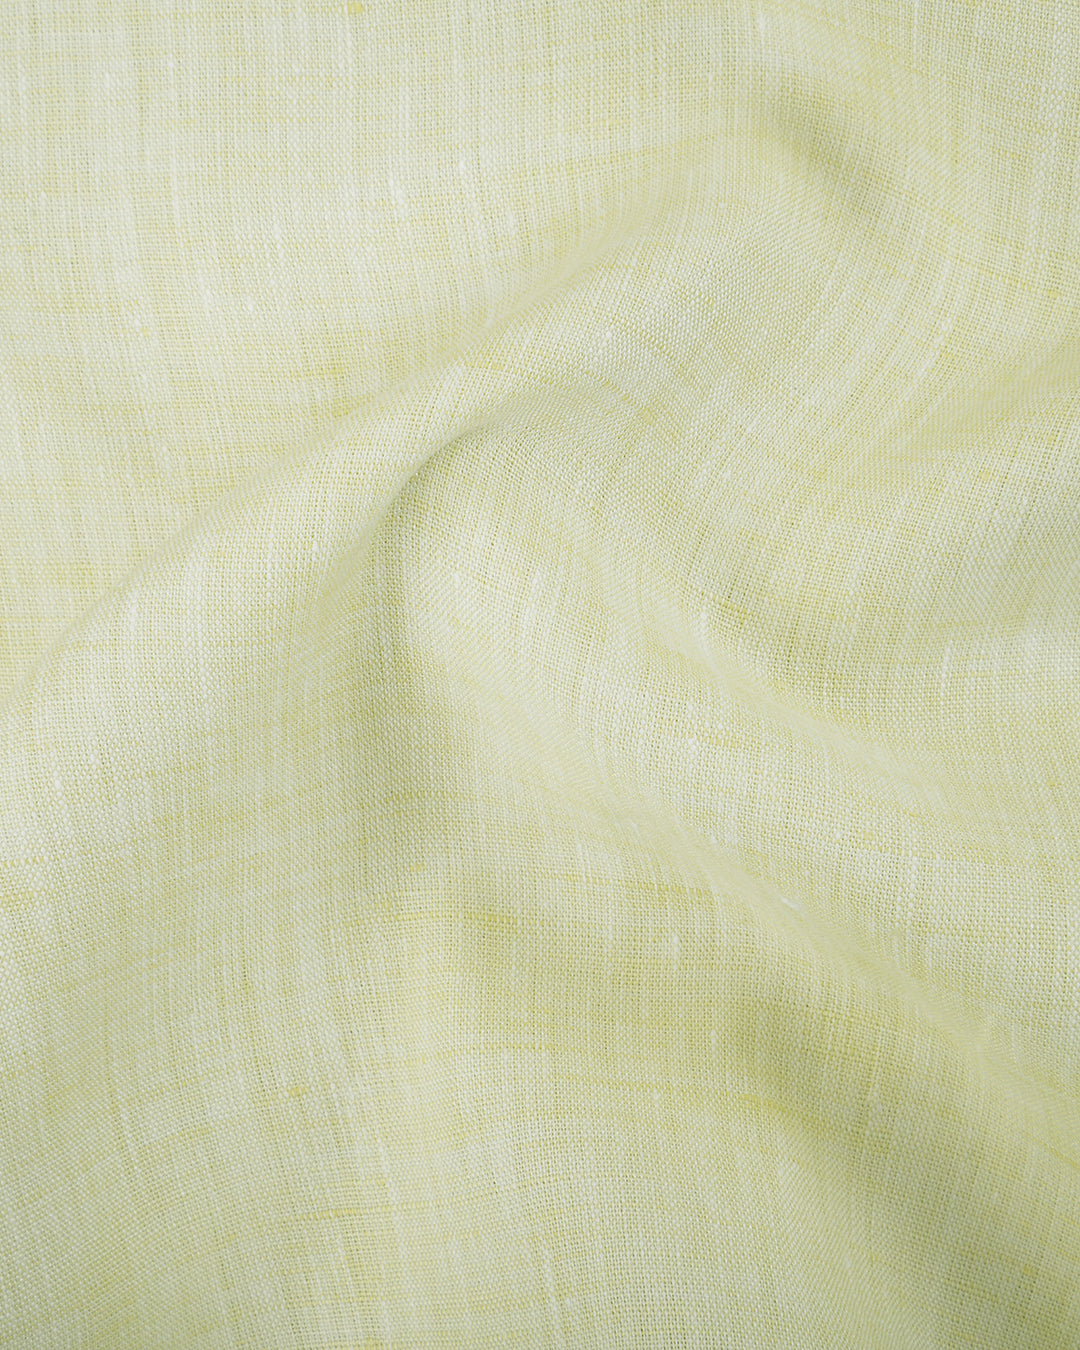 Grandi and Rubinelli Soft Yellow Linen